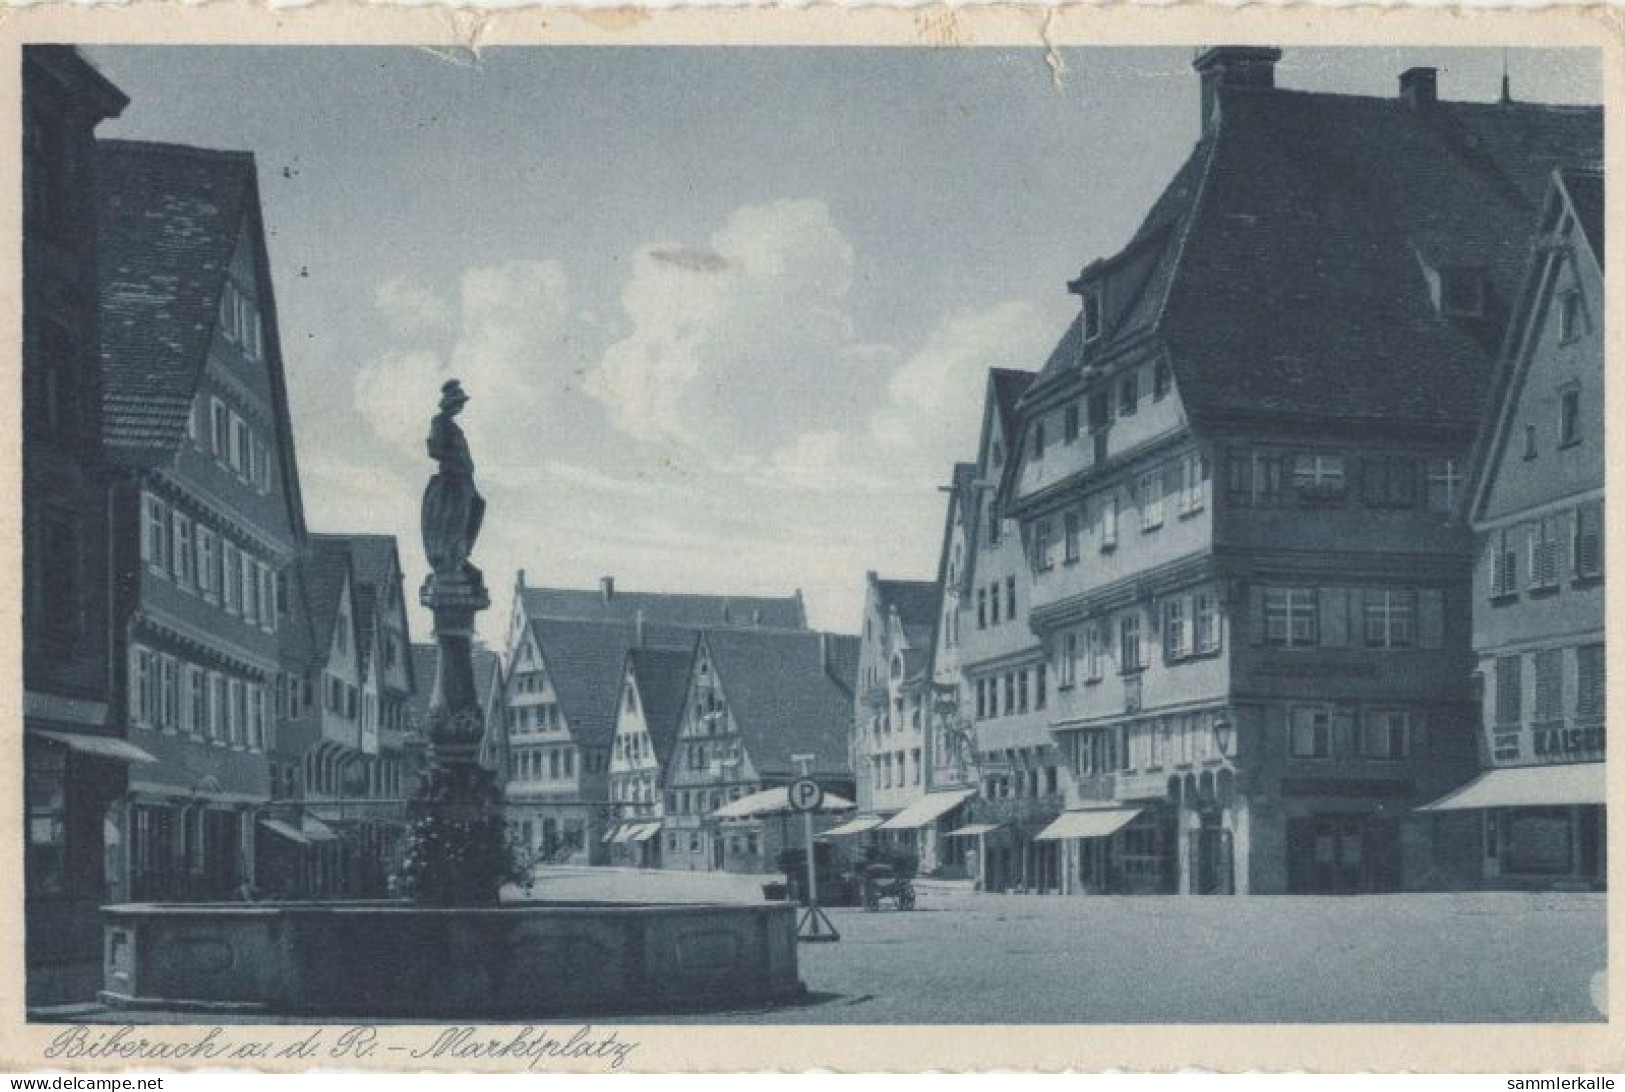 127197 - Biberach An Der Riss - Marktplatz - Biberach